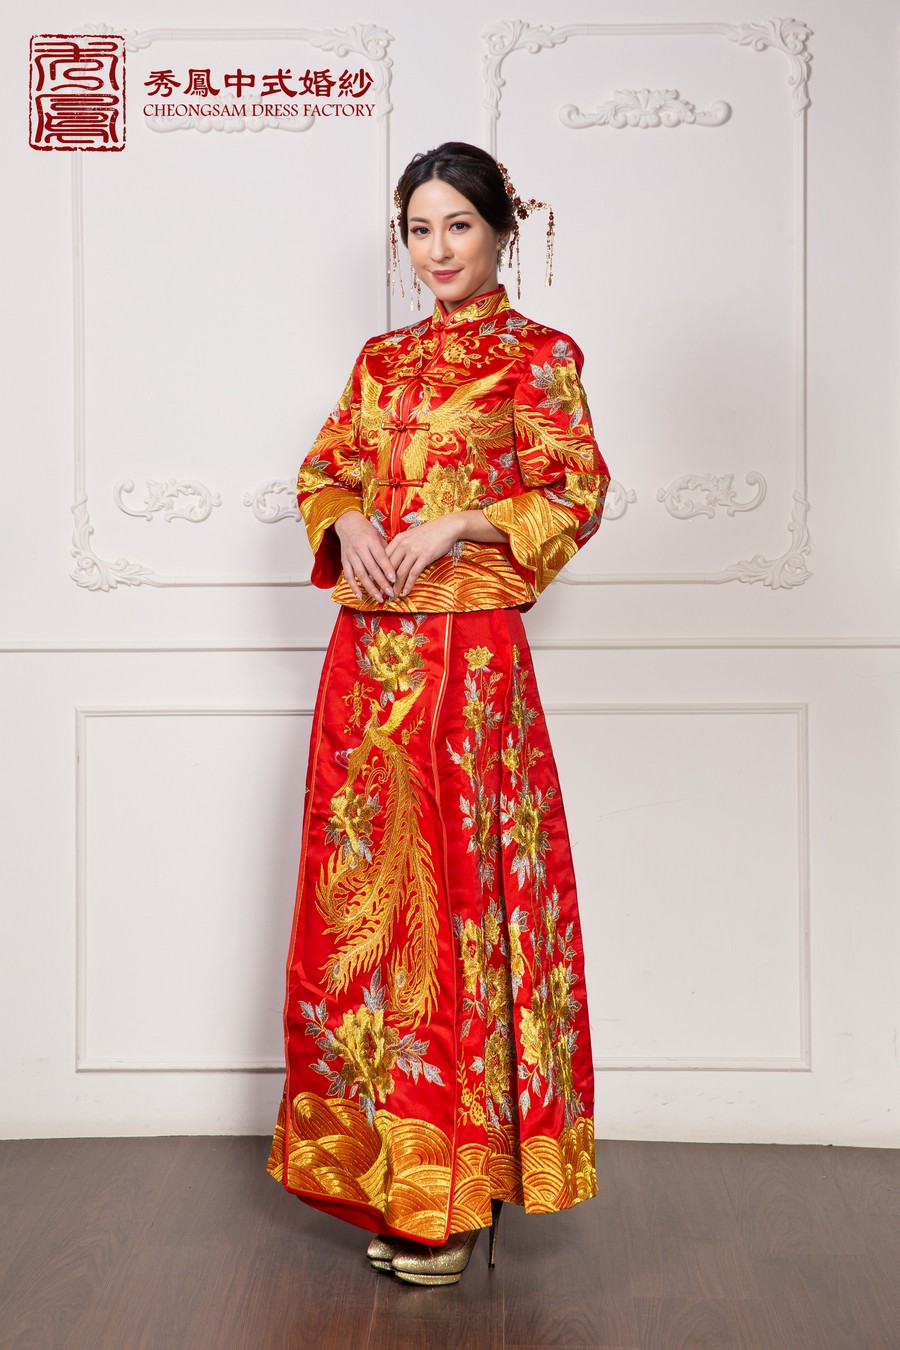 中式禮服 出租,秀禾服款式推薦,龍鳳褂出租,中式婚紗,中式婚紗照,秀禾服